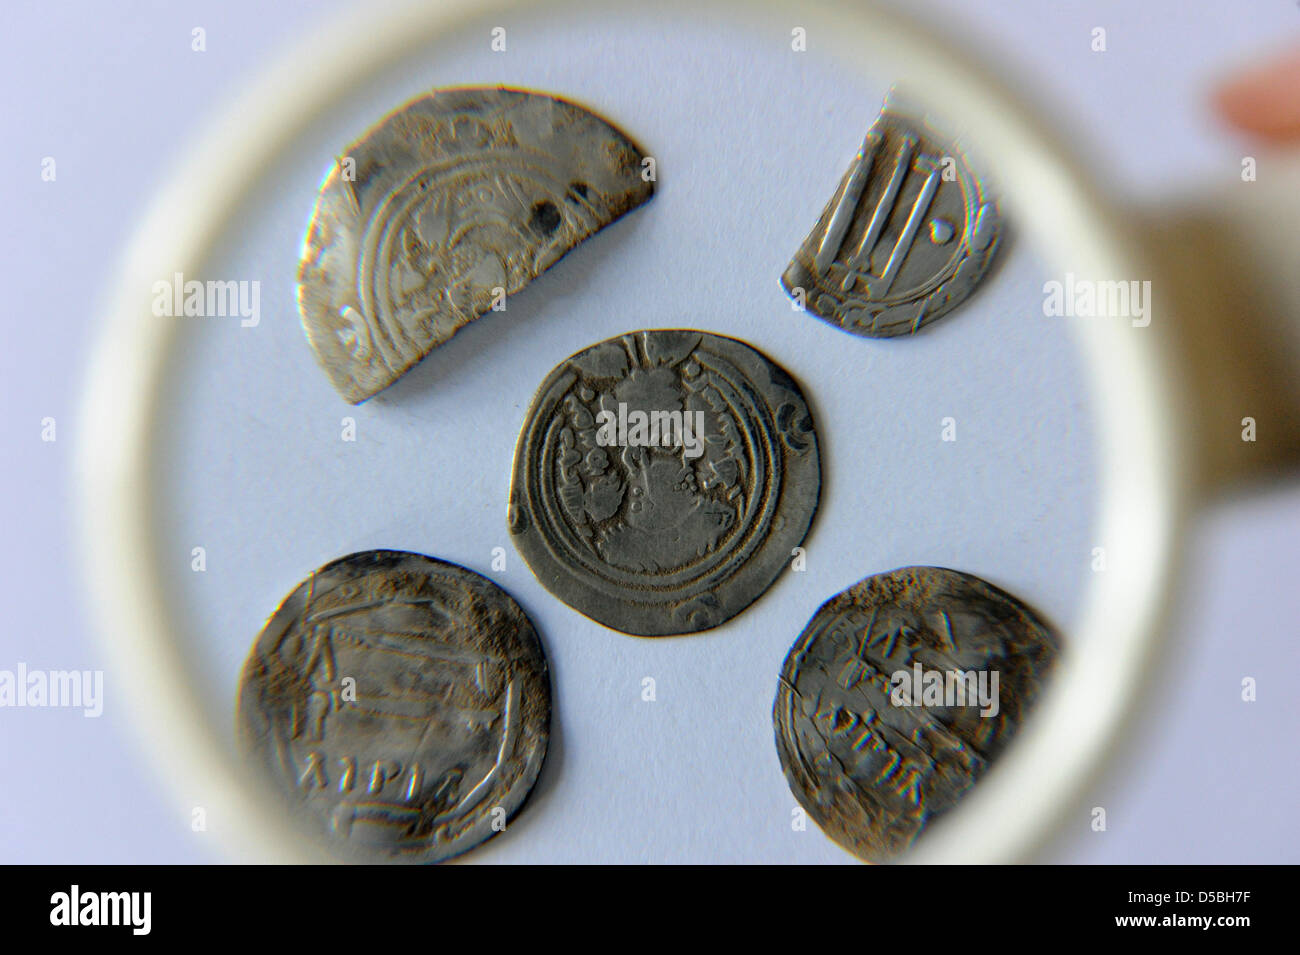 Monete in arabo da un tesoro di argento si trovano sotto una lente di ingrandimento all'università di Greifswald (Germania), 1 settembre 2010. Le monete sono parte di un tesoro trovato a Anklam. Gli archeologi hanno scoperto la trasure, che è di circa 1200 anni. Foto: Stefan Sauer Foto Stock